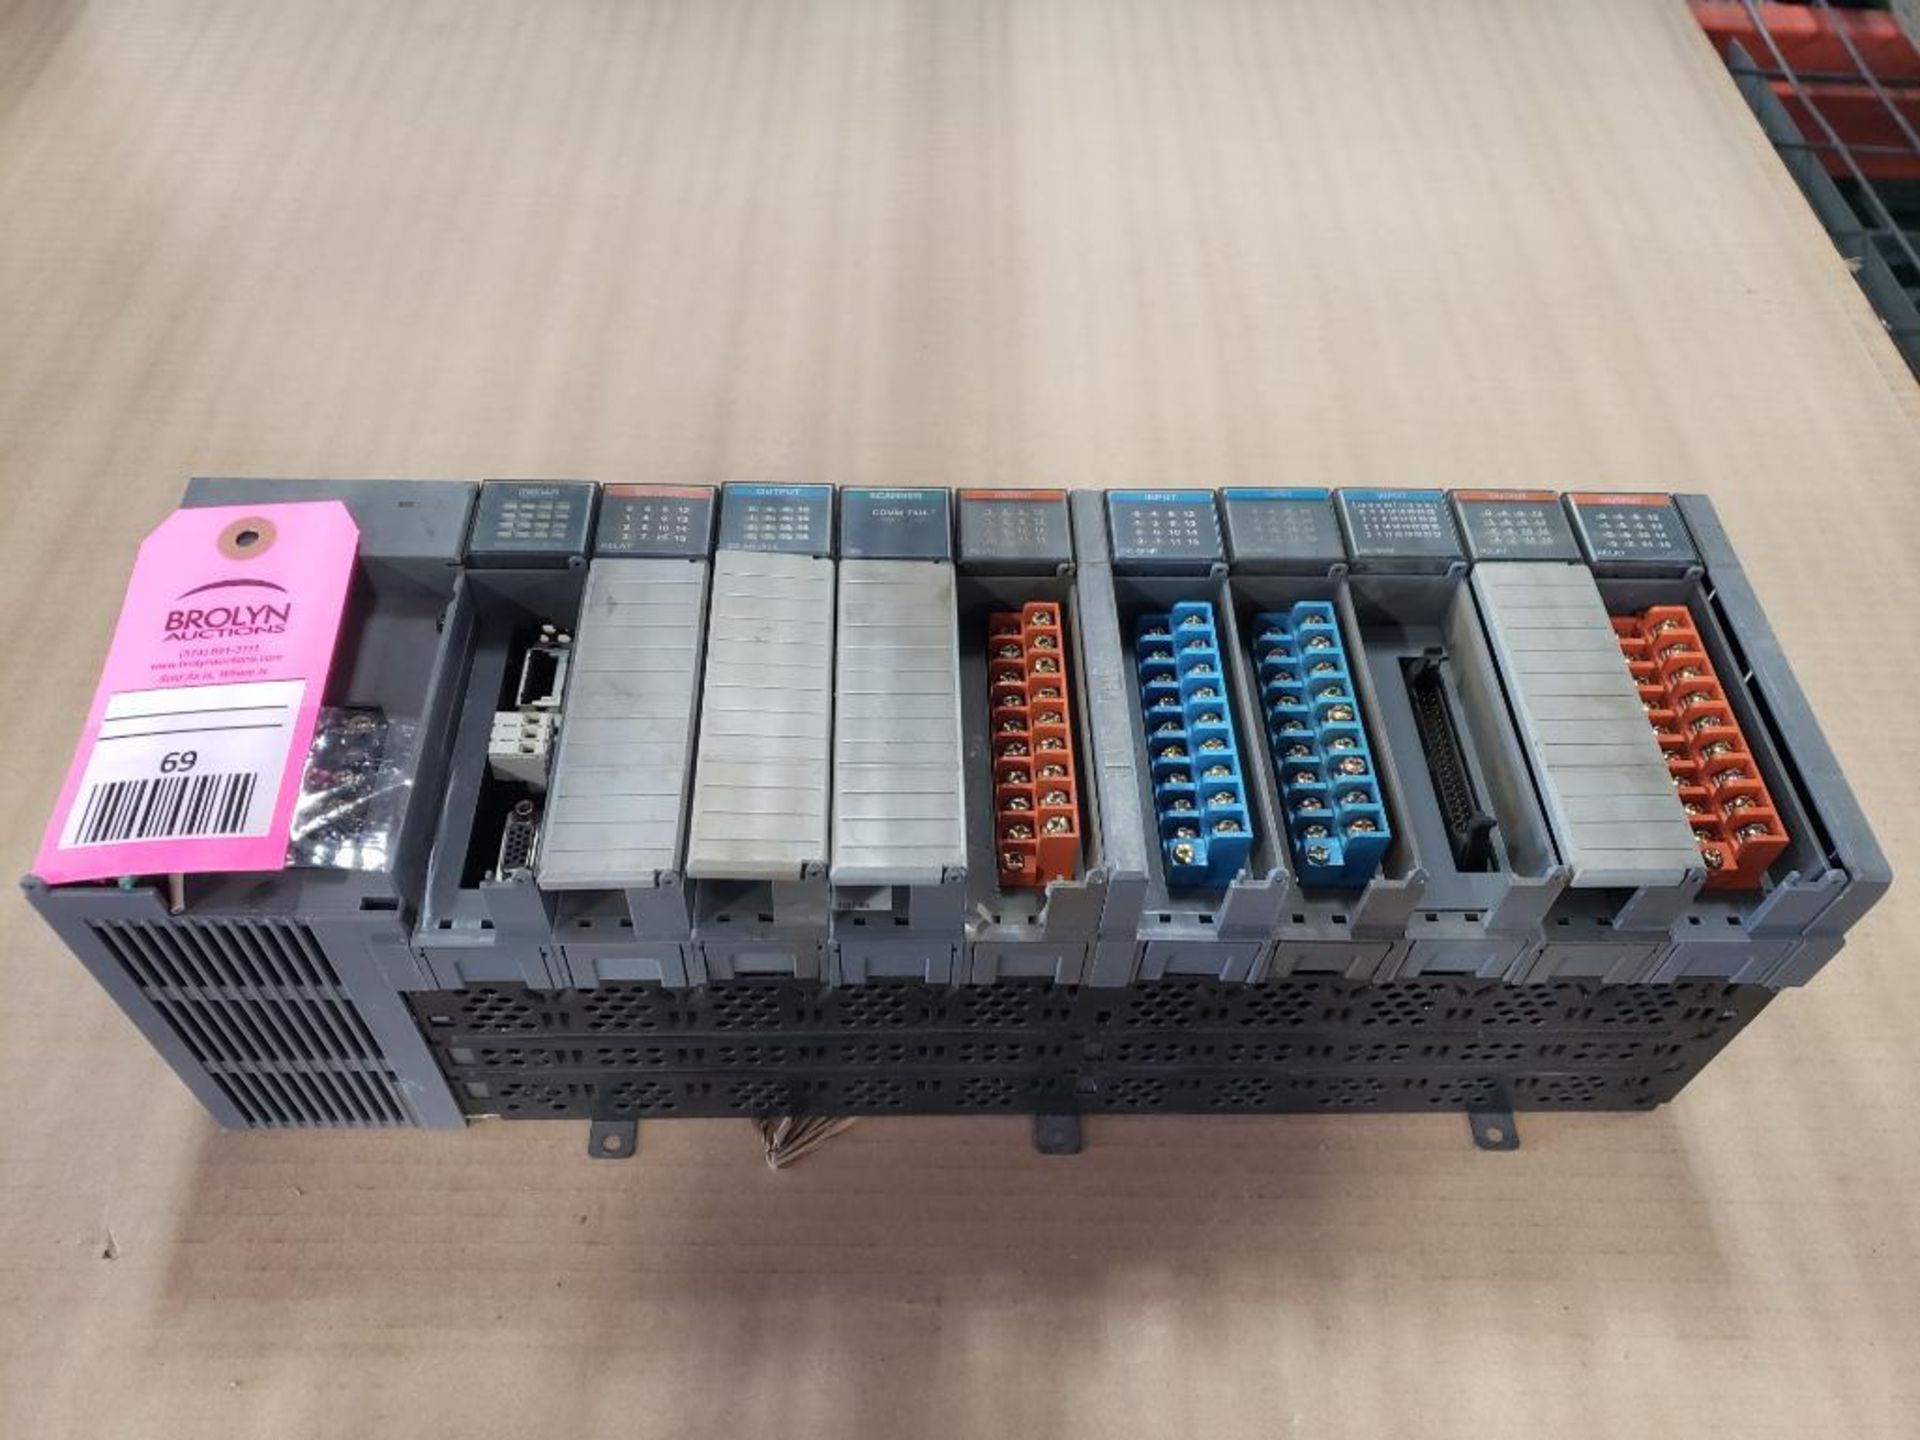 Allen Bradley SLC 5/01 controller rack. With Scanner and Medar Wedweld cards.